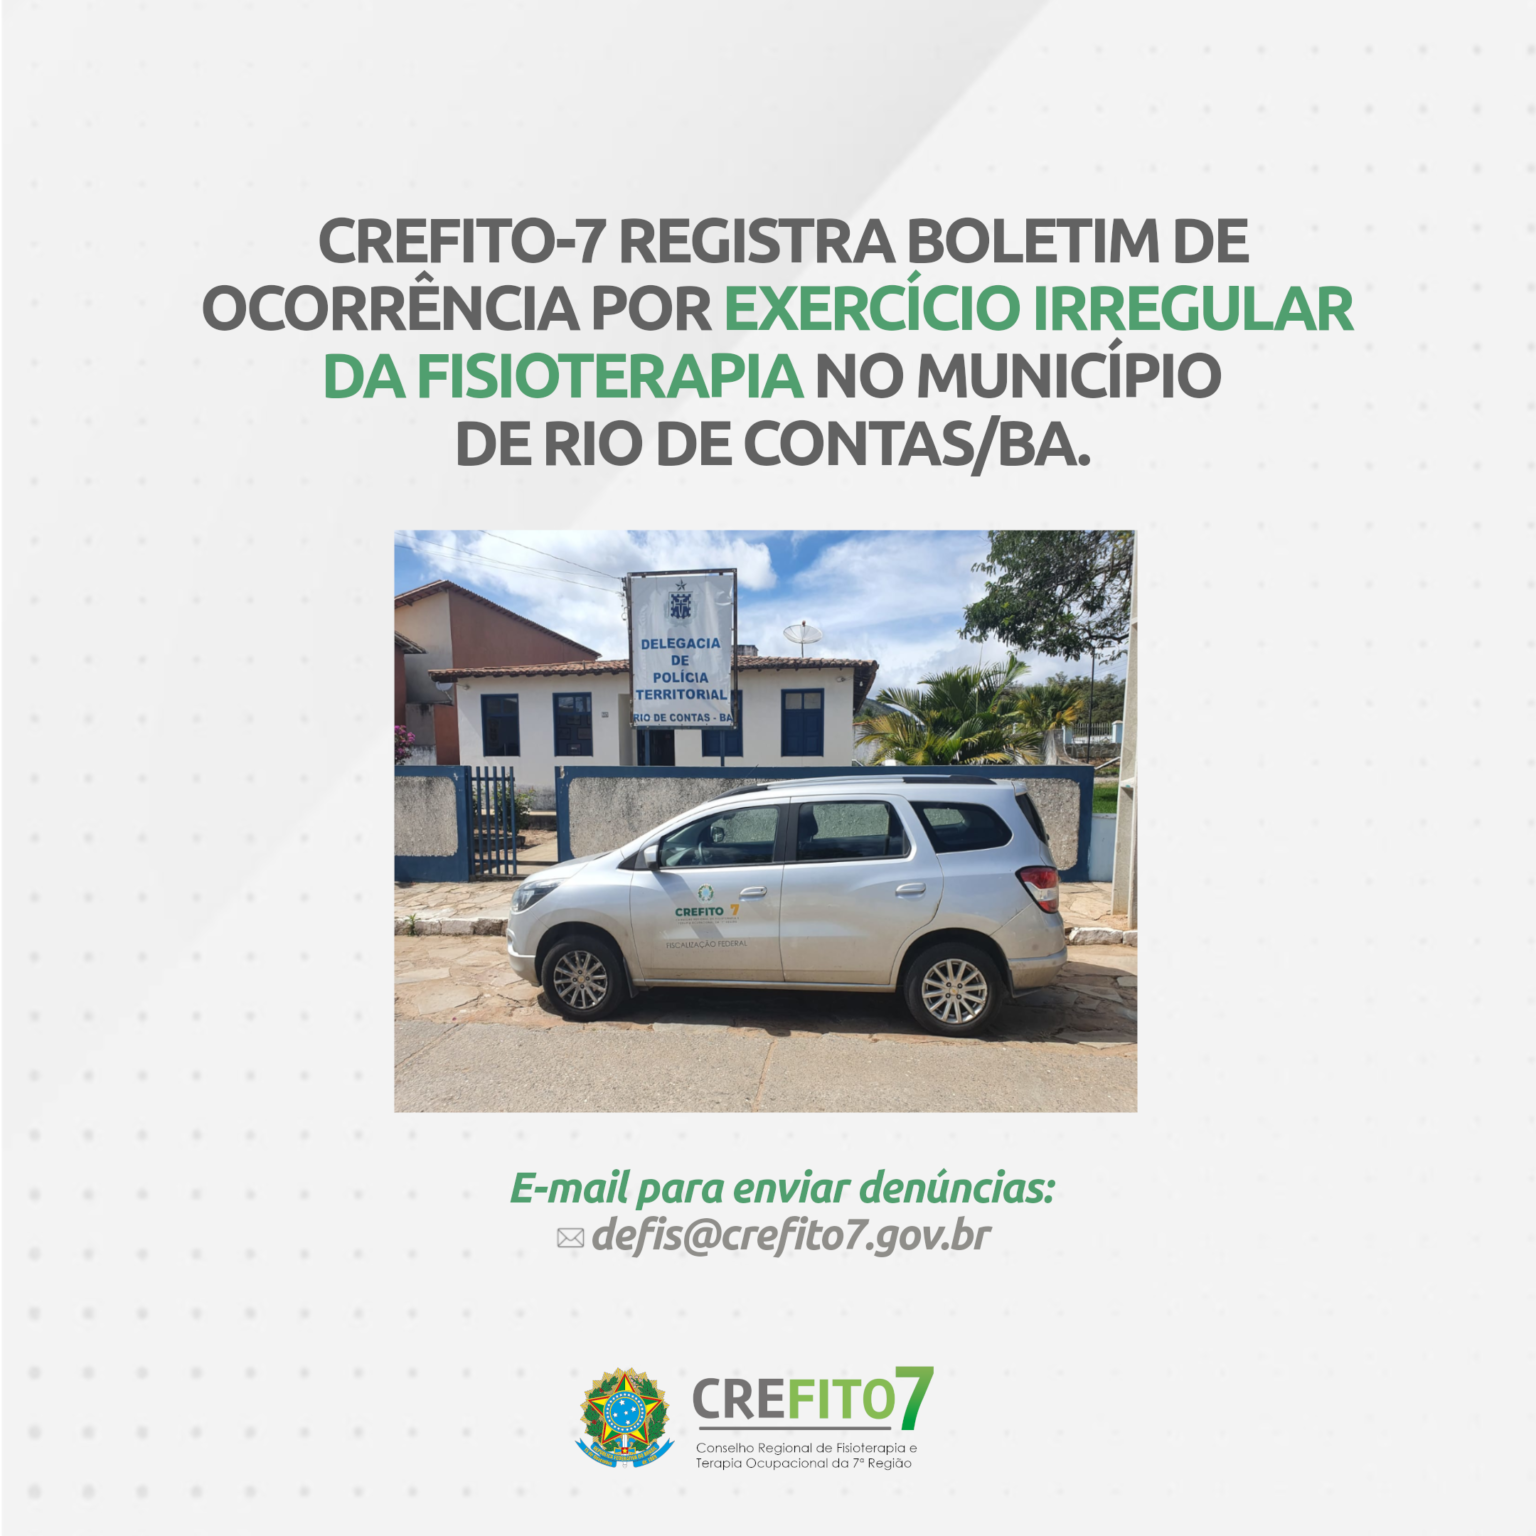 CREFITO-7 REGISTRA BOLETIM DE OCORRÊNCIA POR EXERCÍCIO IRREGULAR DA FISIOTERAPIA EM RIO DE CONTAS/BA